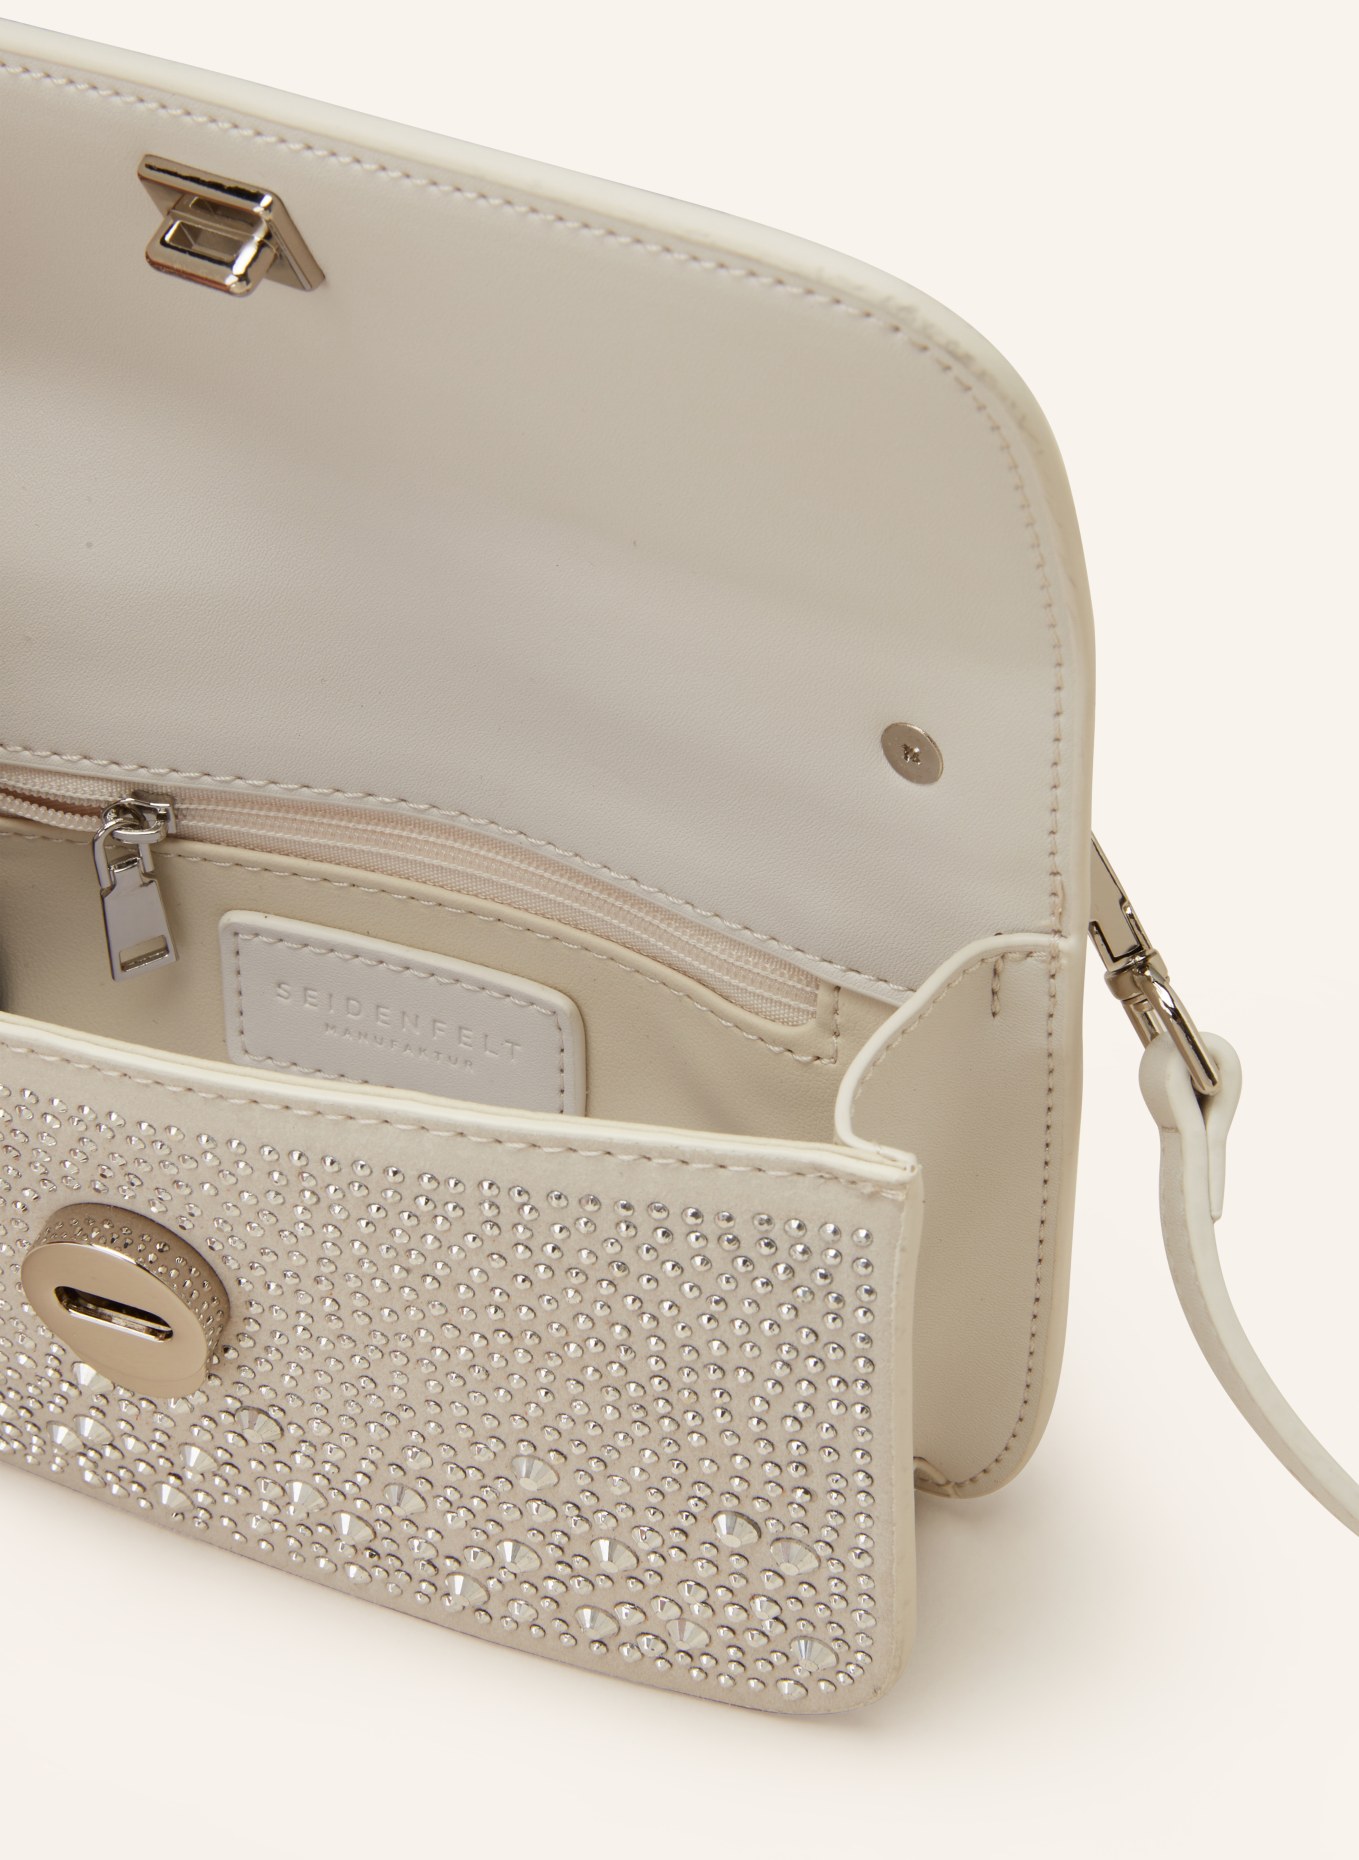 SEIDENFELT Crossbody bag ANGA with decorative gems, Color: LIGHT GRAY (Image 3)